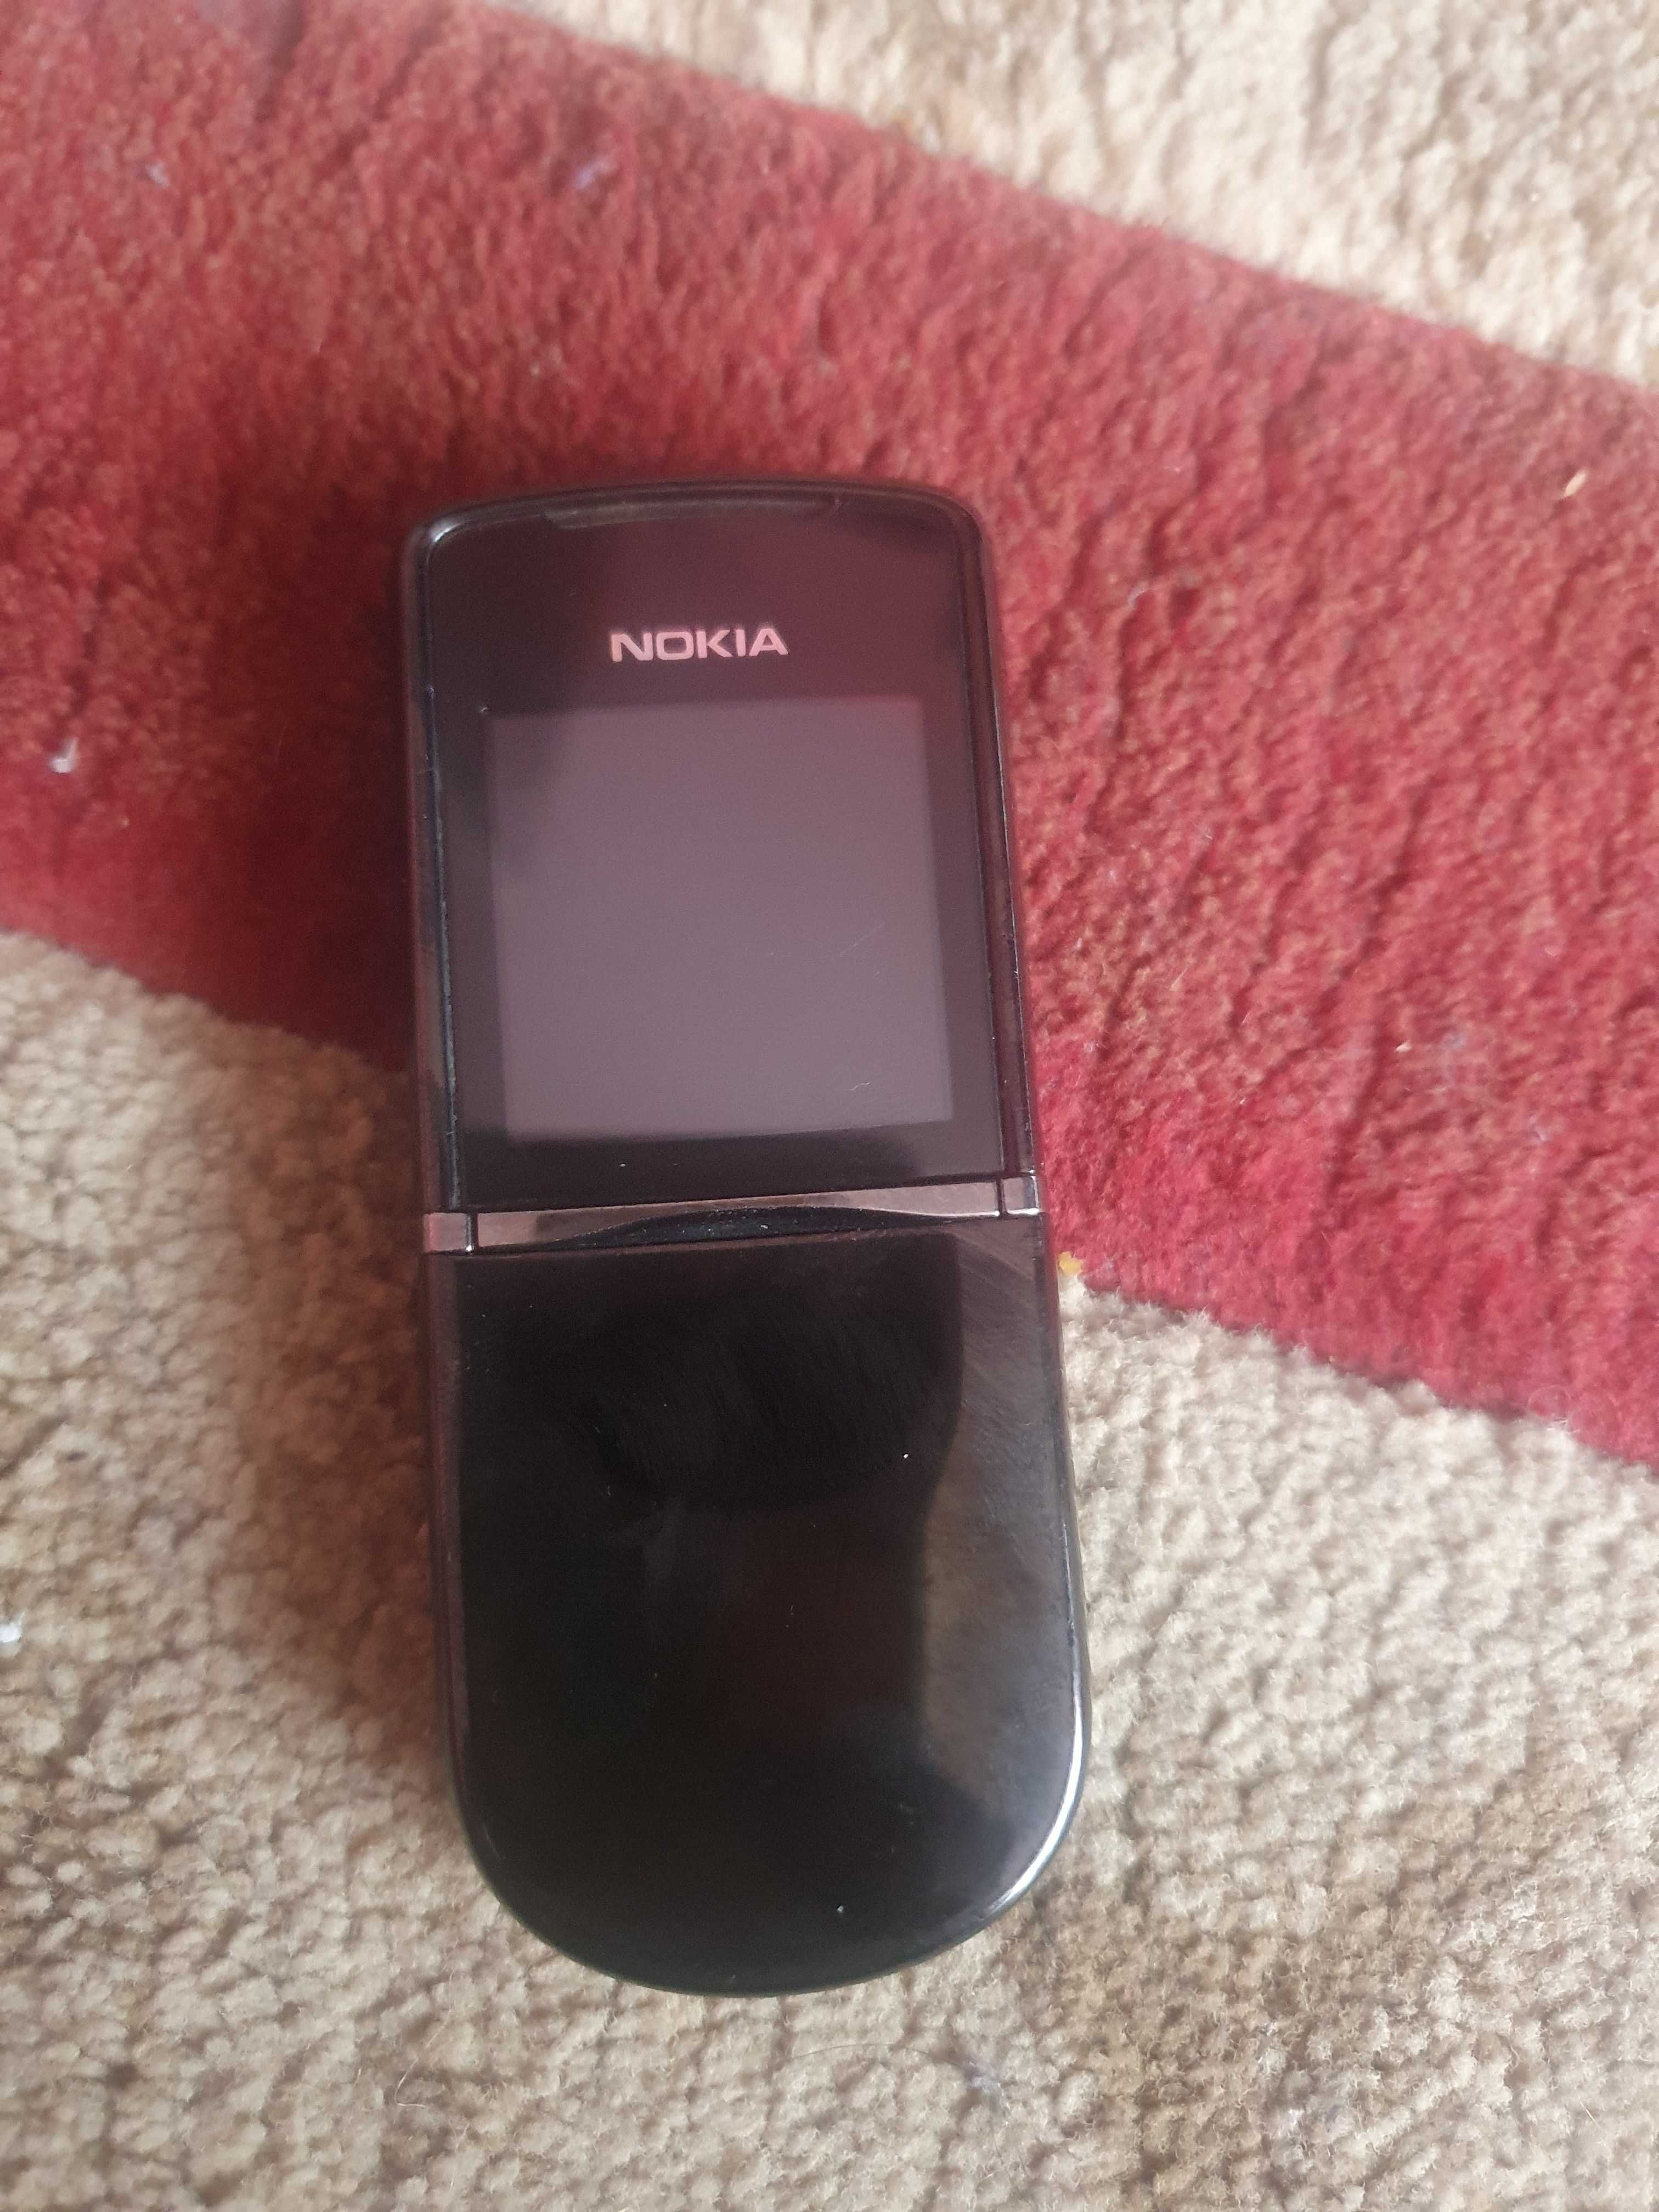 Nokia model 8800d